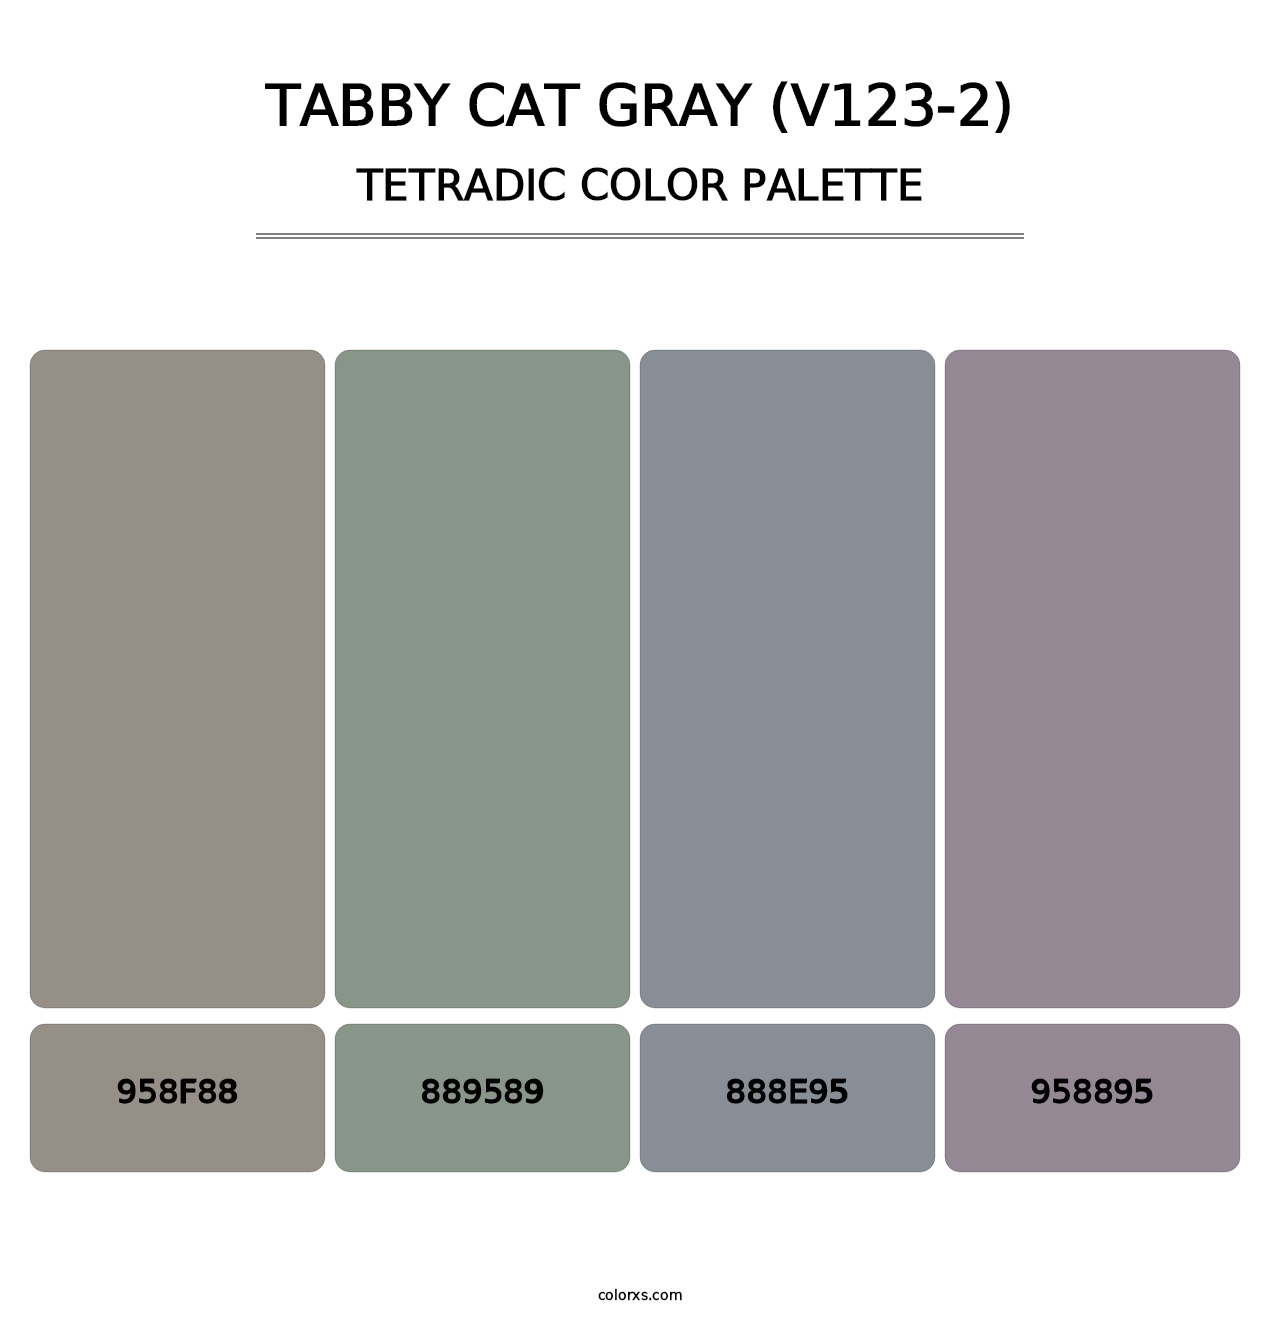 Tabby Cat Gray (V123-2) - Tetradic Color Palette